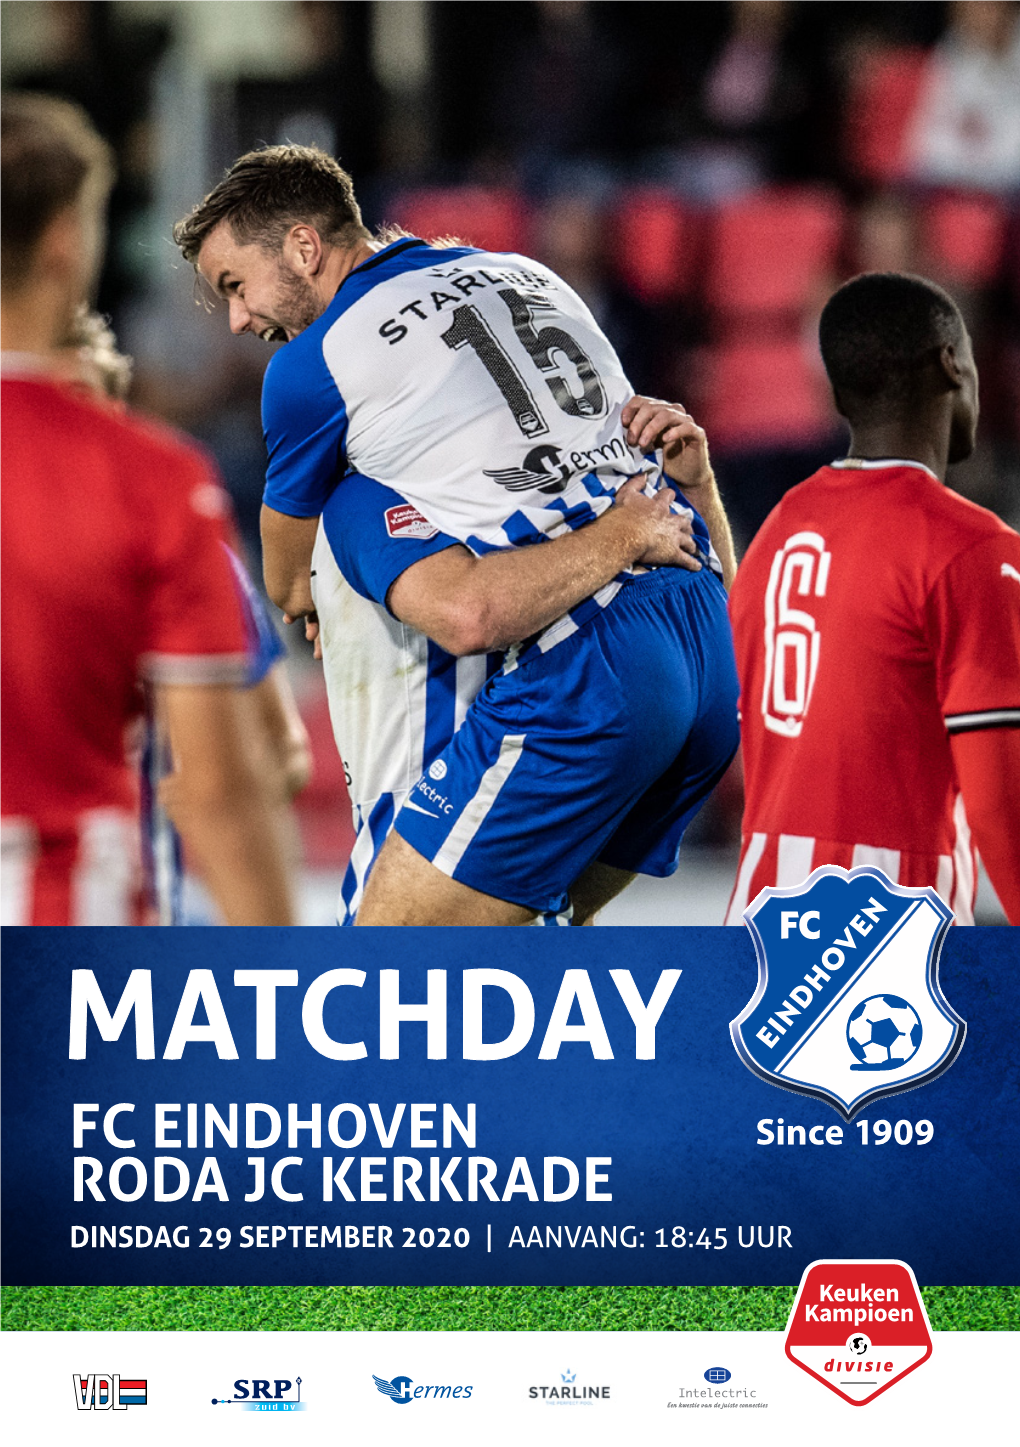 Matchday Fc Eindhoven Roda Jc Kerkrade Dinsdag 29 September 2020 | Aanvang: 18:45 Uur Wilt U Ook Adverteren in Dit Programmaboekje En Daarmee Fc Eindhoven Steunen?